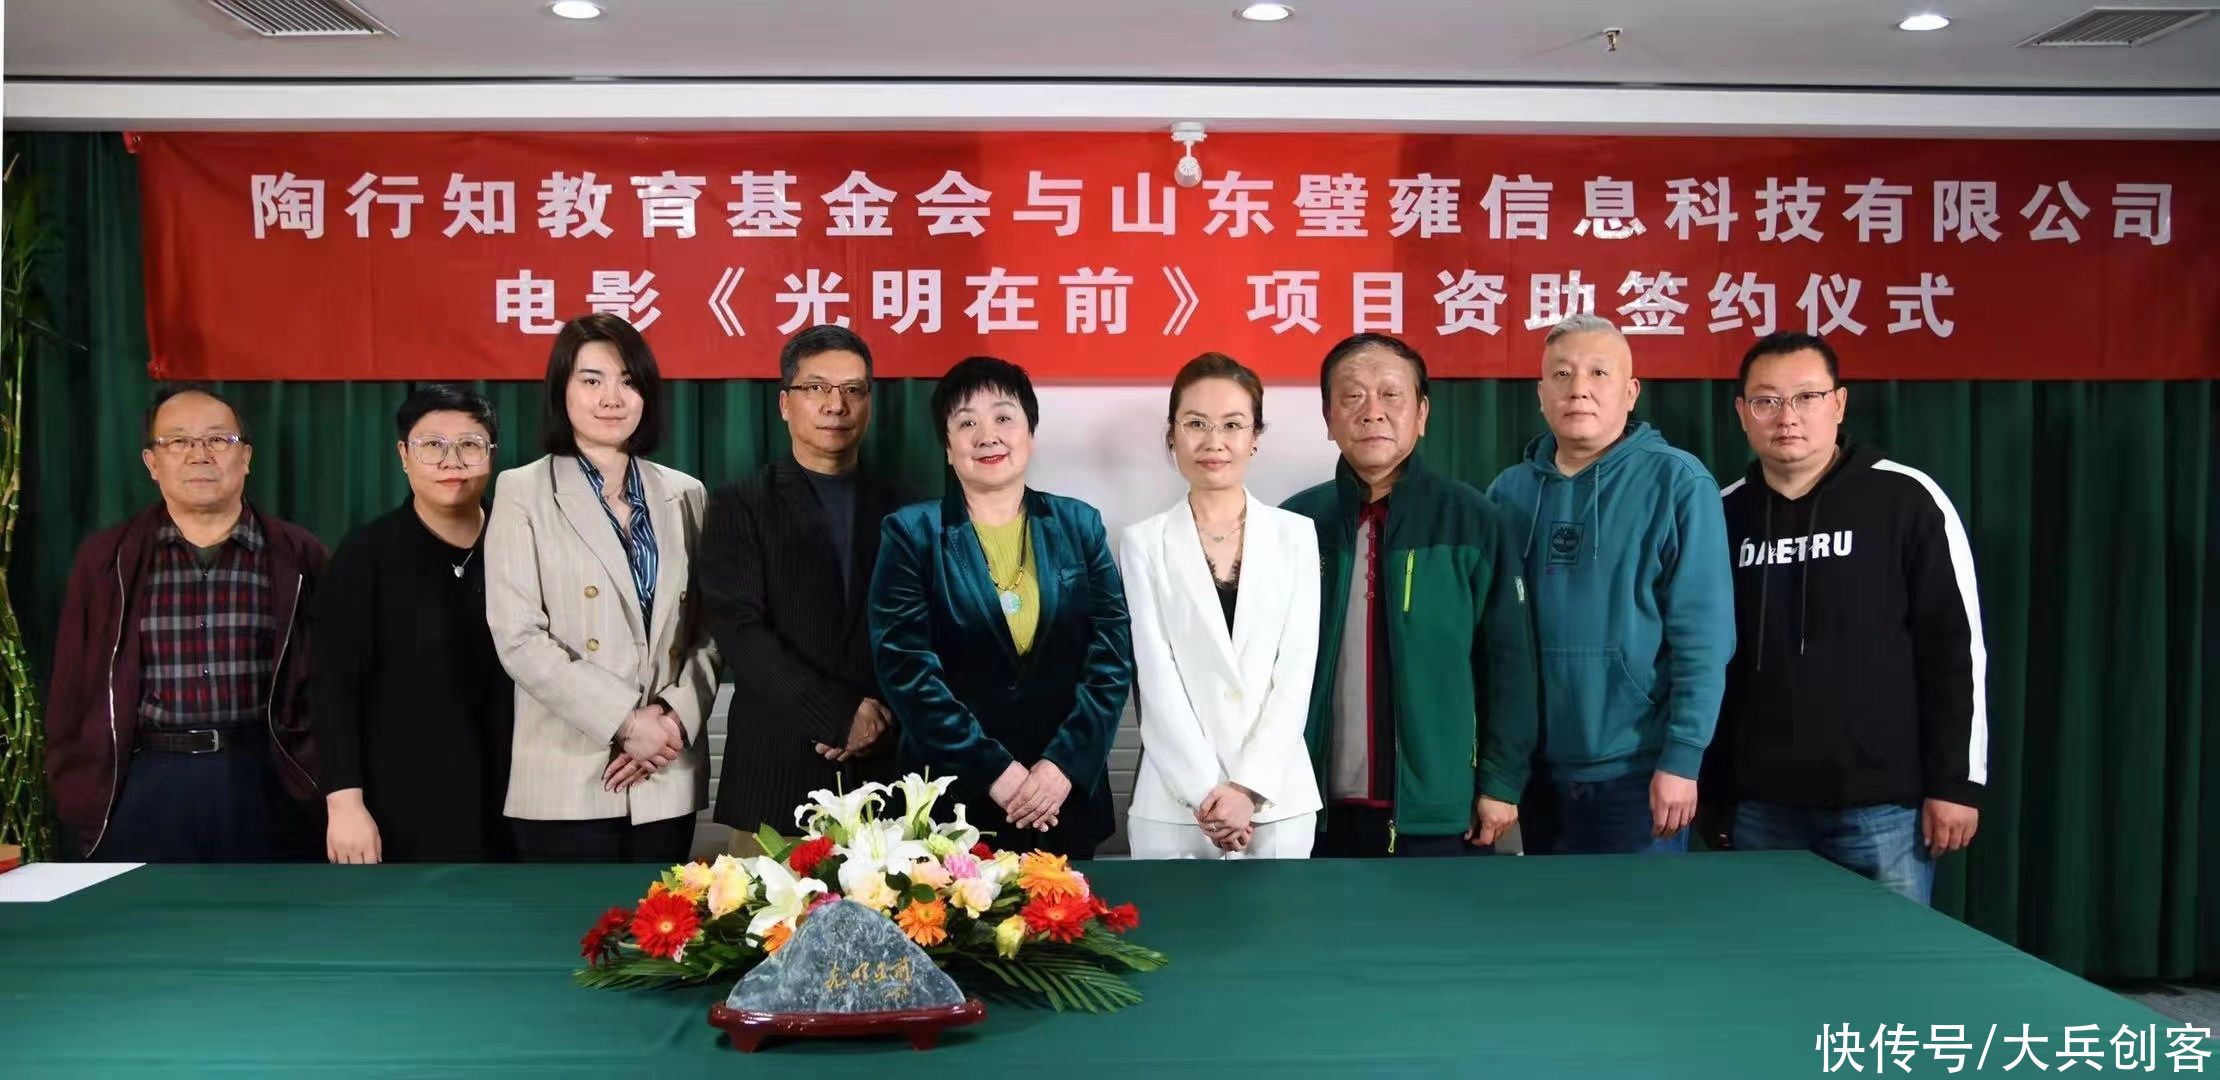 陶行知教育基金会与山东璧雍信息科技签署全面战略合作协议